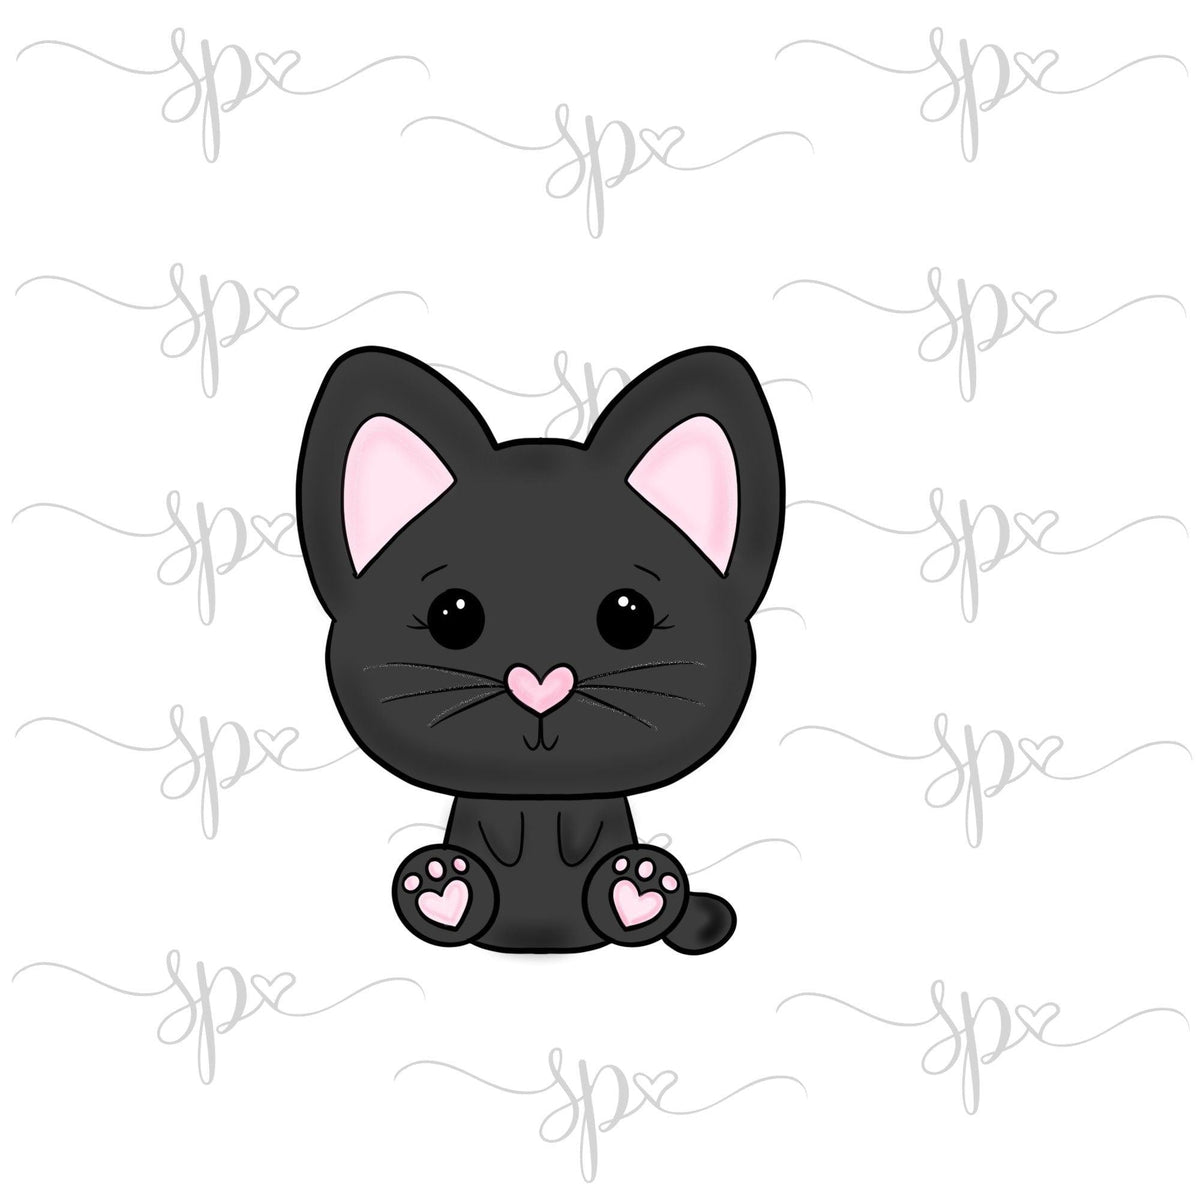 Kawaii Cat Cookie Cutter - Sweetleigh 